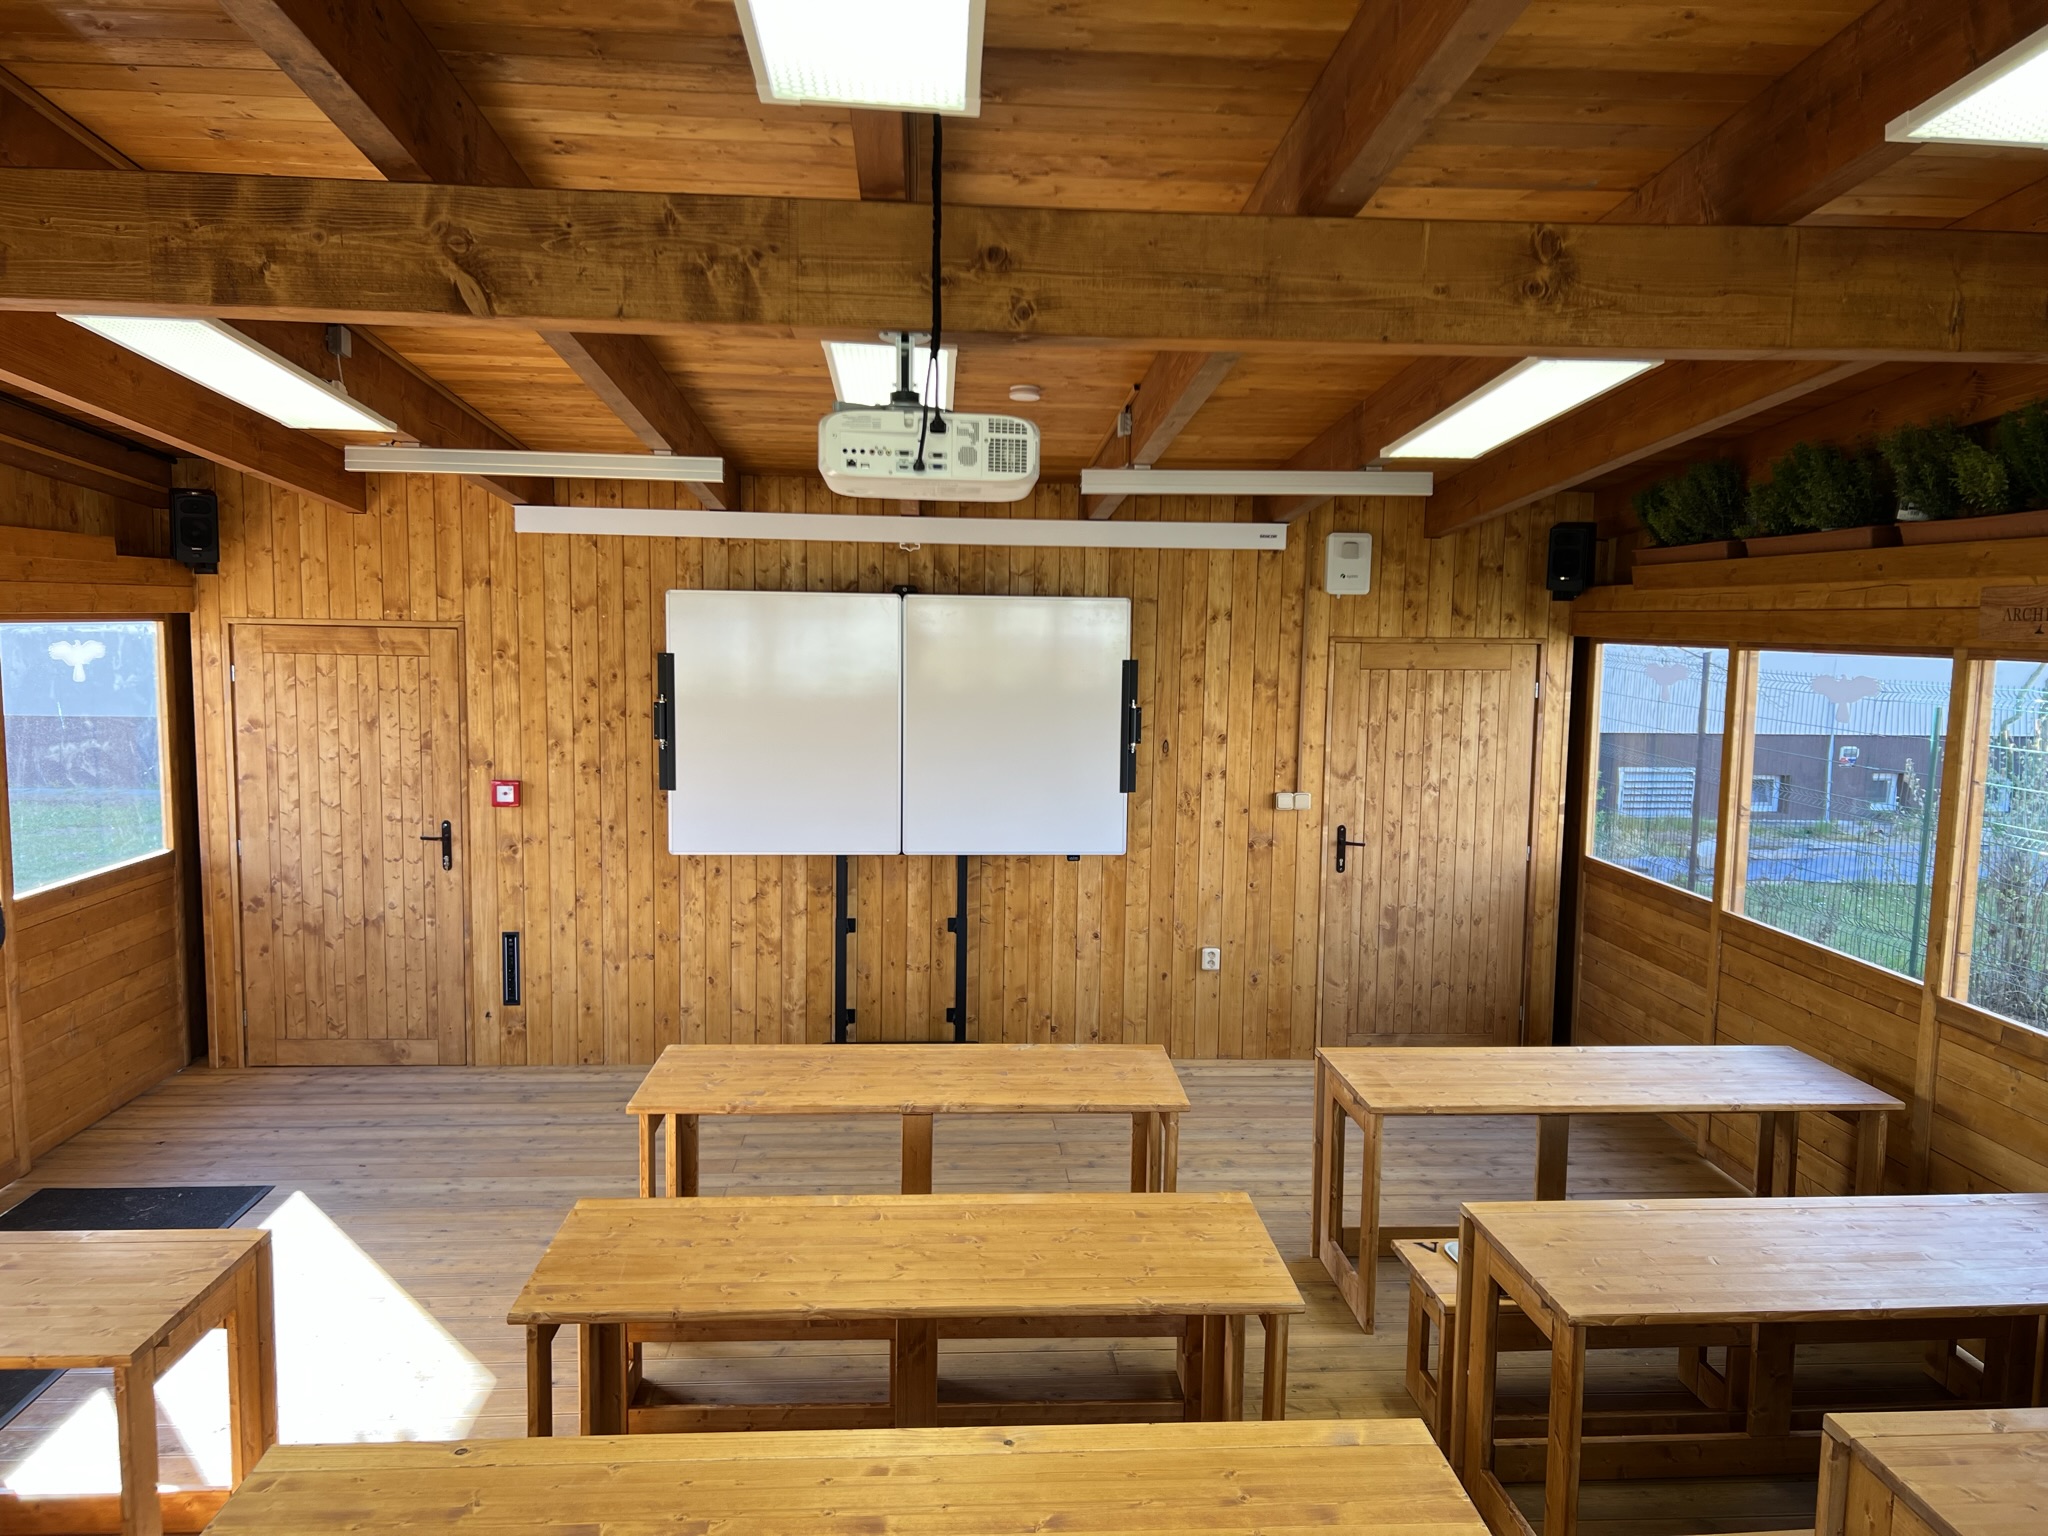 image of eduvision school interior